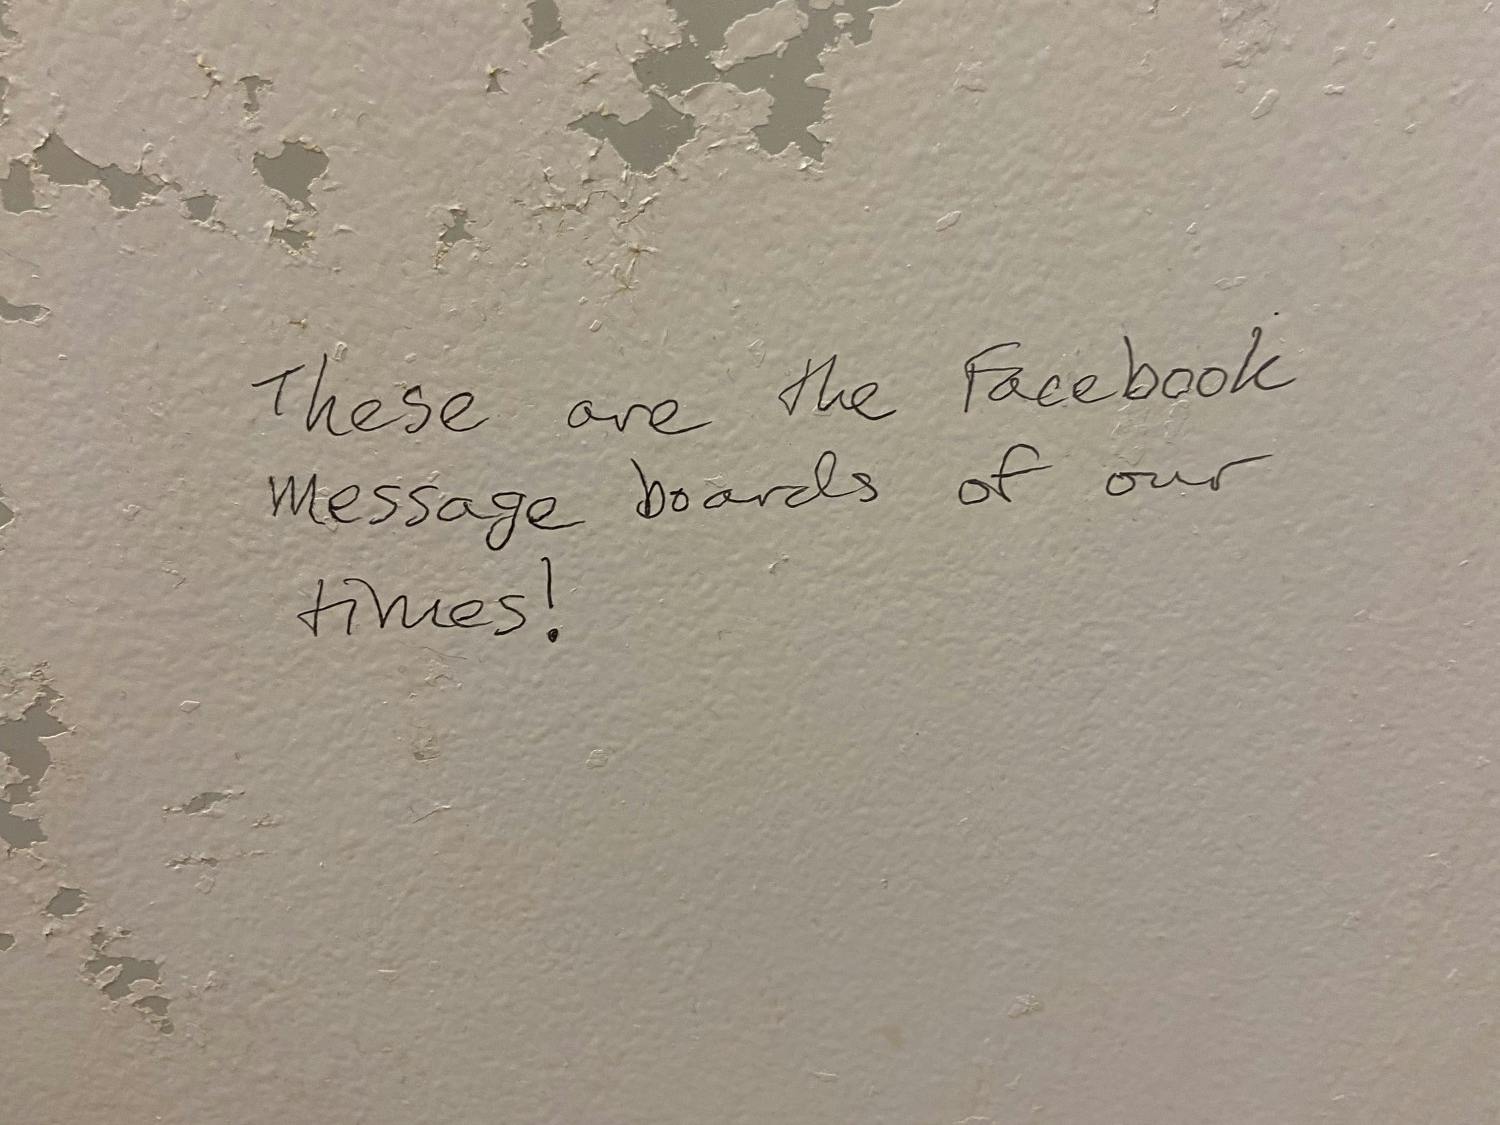 Bathroom graffiti in the Student Union.